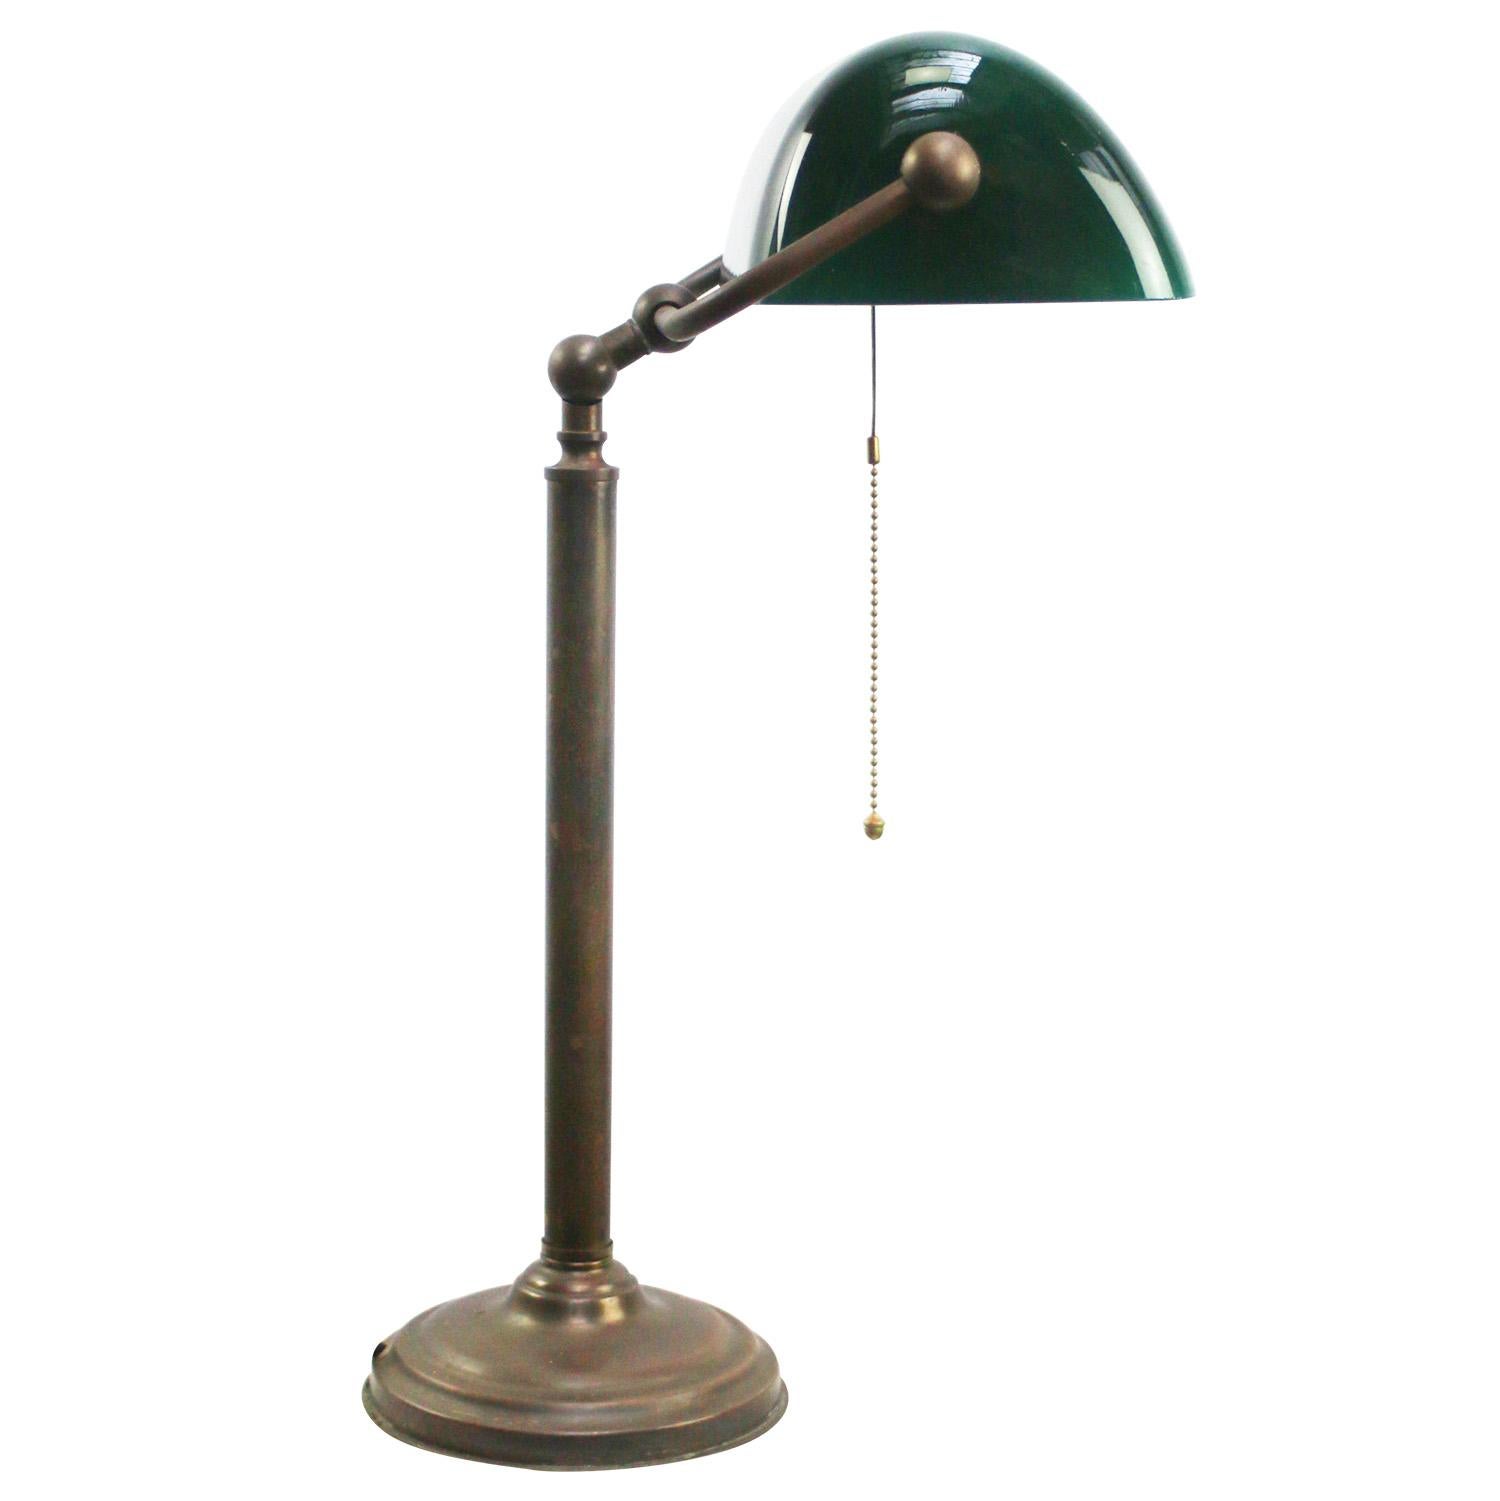 Brass desk light / banker’s lamp
Green glass shade
2.5 meter  / 100